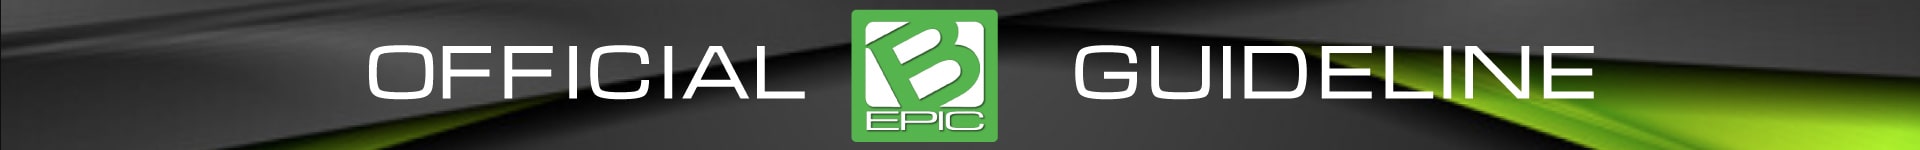 bepic member registration (official instruction)